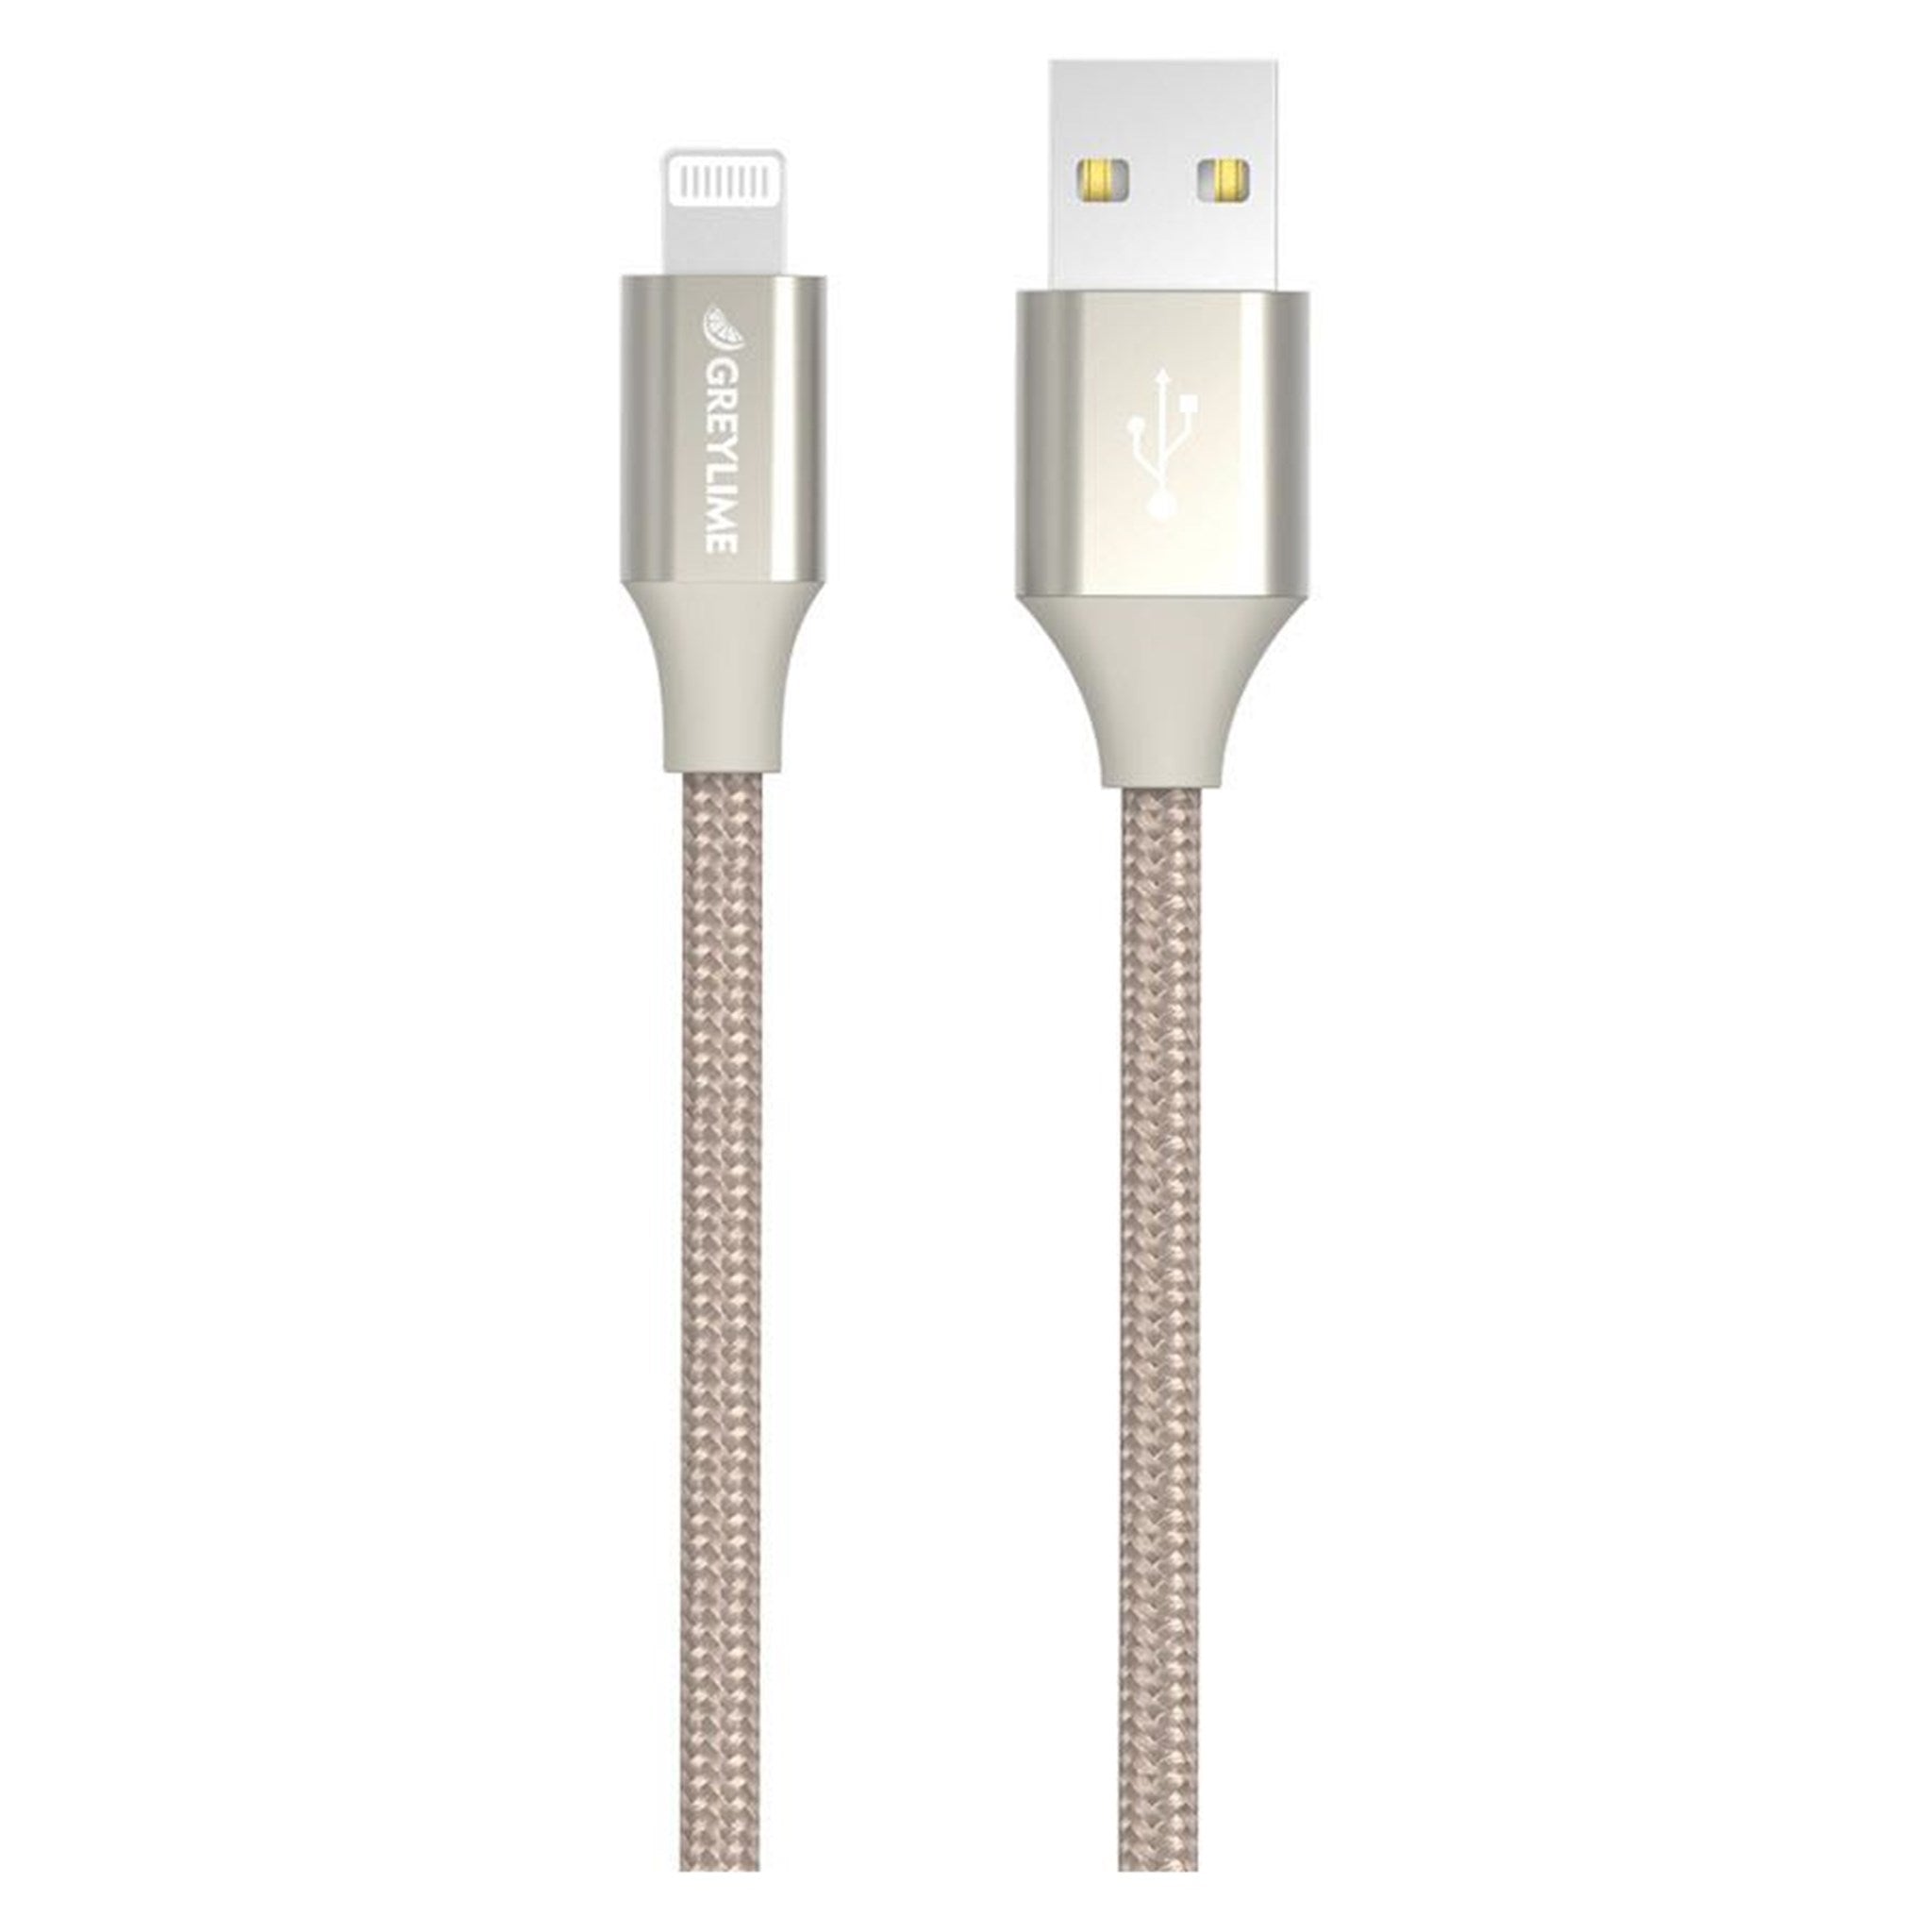 Billede af GreyLime Braided USB-A til MFi Lightning Kabel Beige 2 m hos Balar